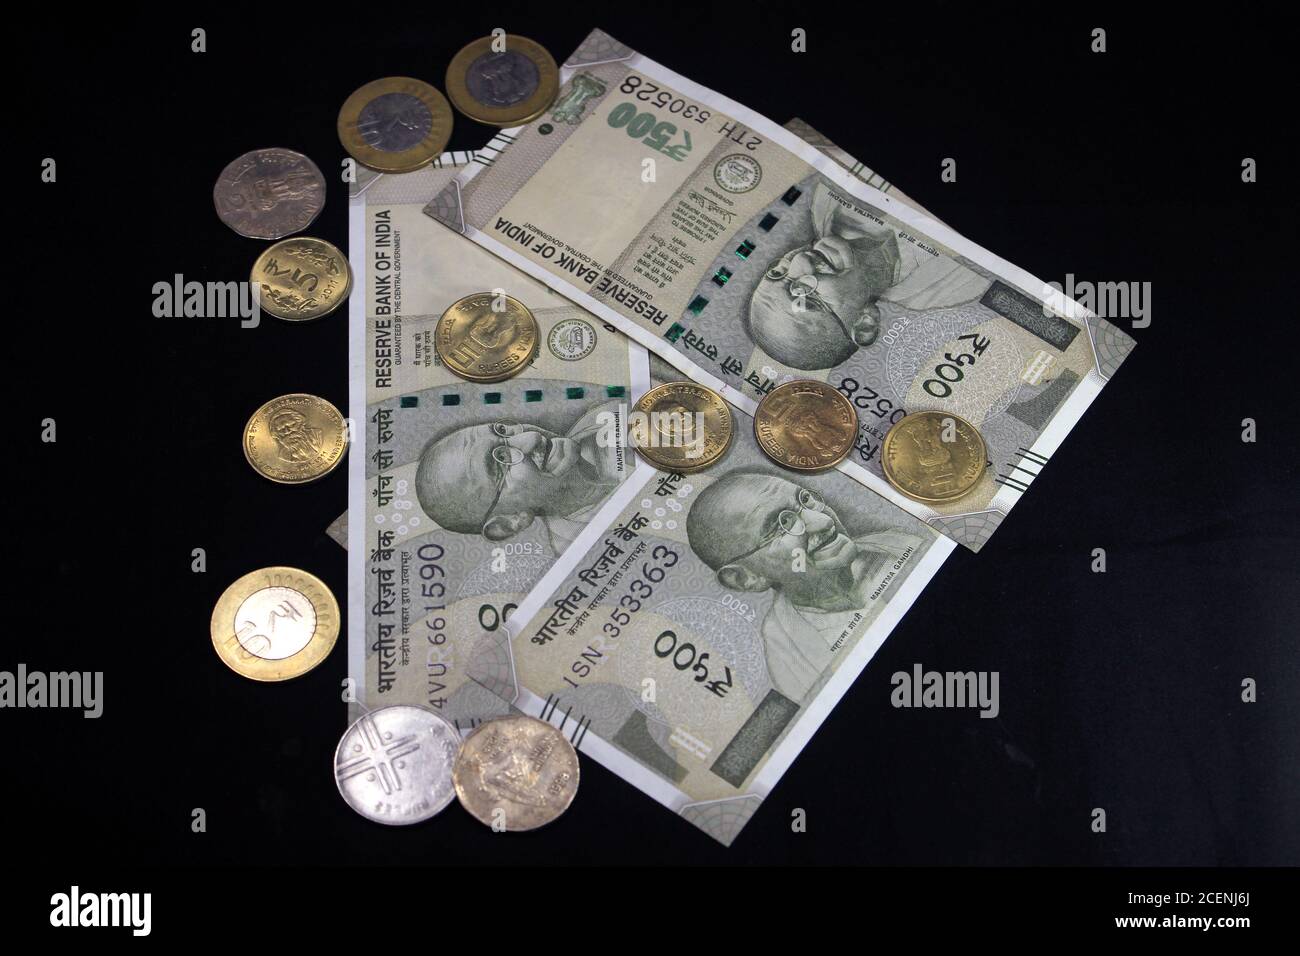 Monnaie indienne. Note de 500 roupies avec pièces de monnaie indiennes. Monnaie indienne isolée sur fond noir. Banque D'Images